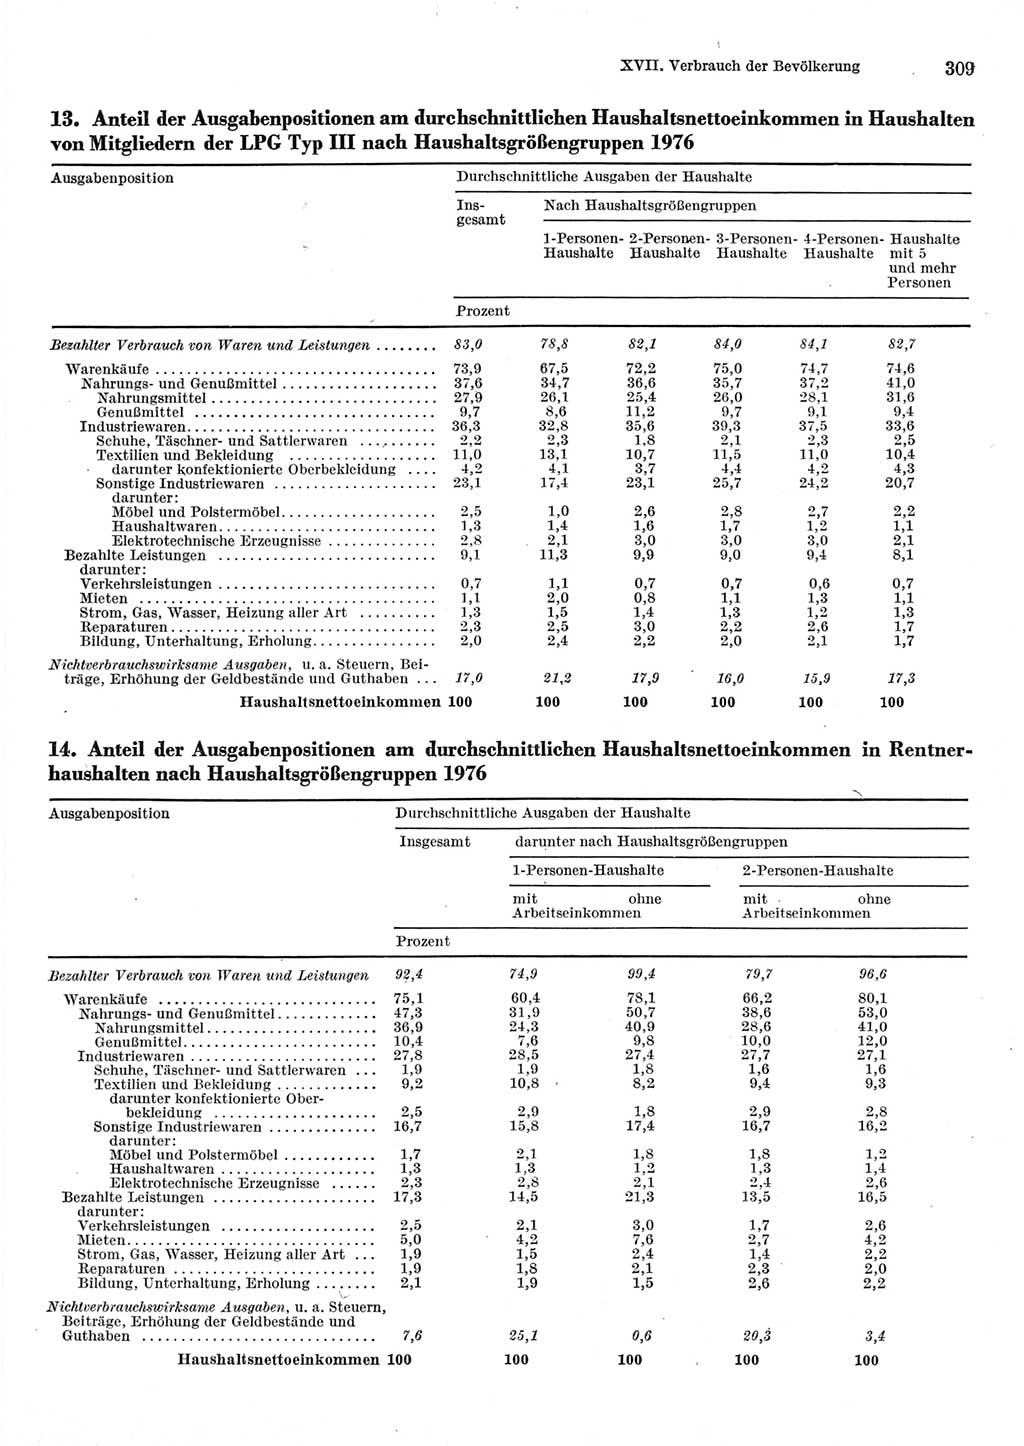 Statistisches Jahrbuch der Deutschen Demokratischen Republik (DDR) 1977, Seite 309 (Stat. Jb. DDR 1977, S. 309)